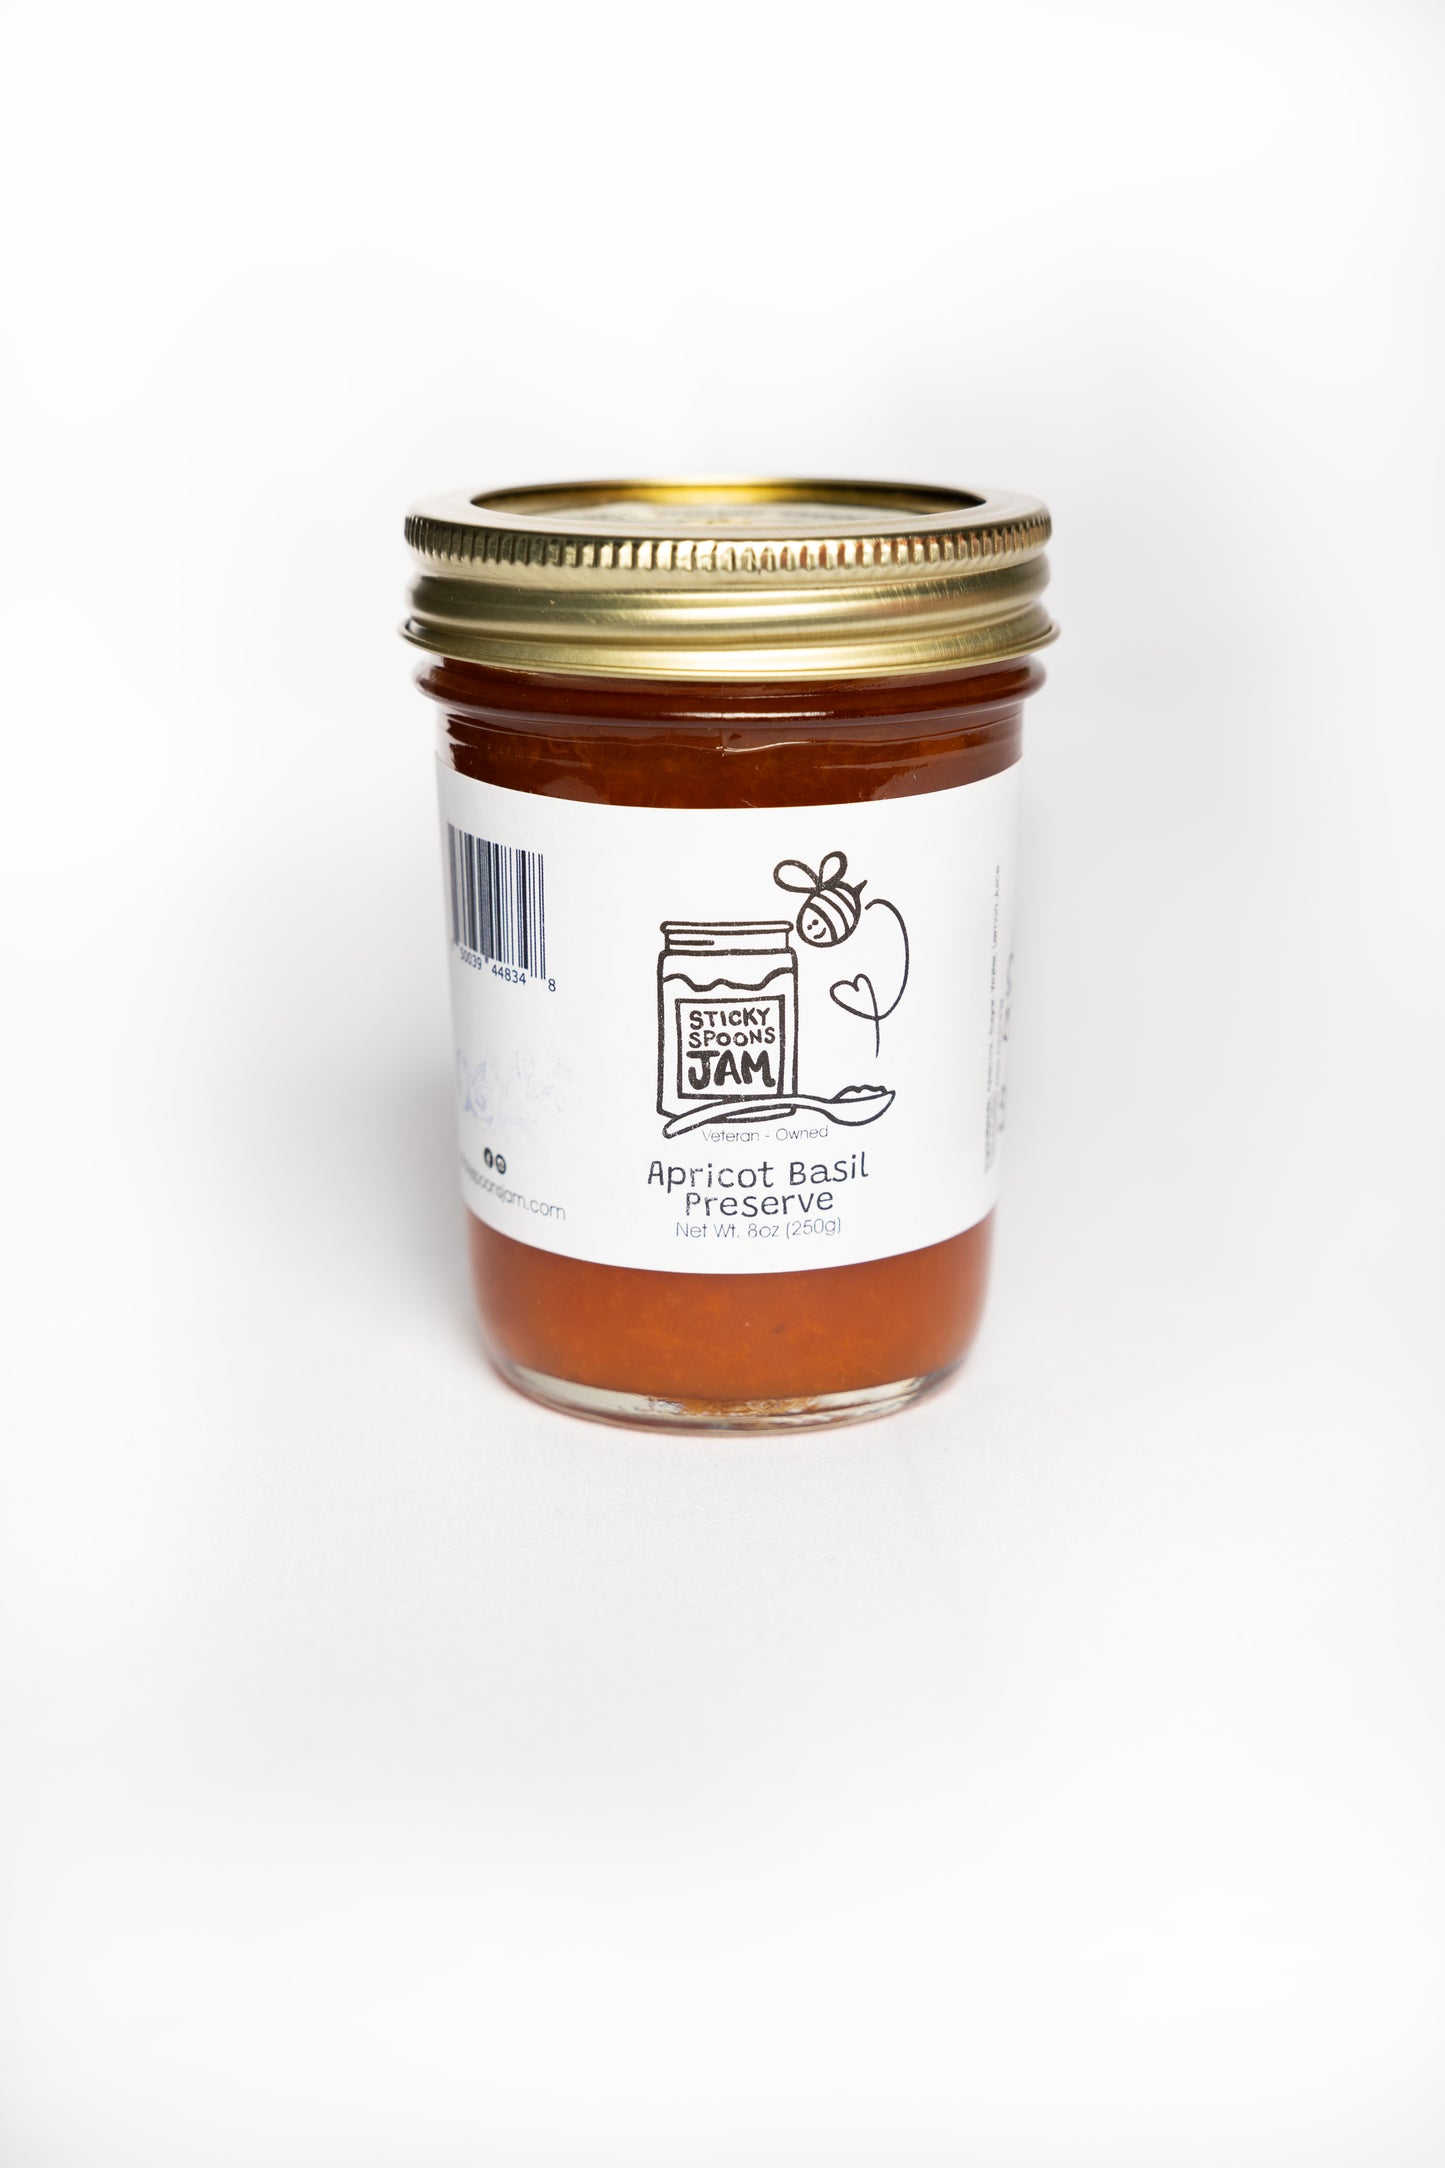 8oz jar of Sticky Spoons Jam Apricot Basil Preserve